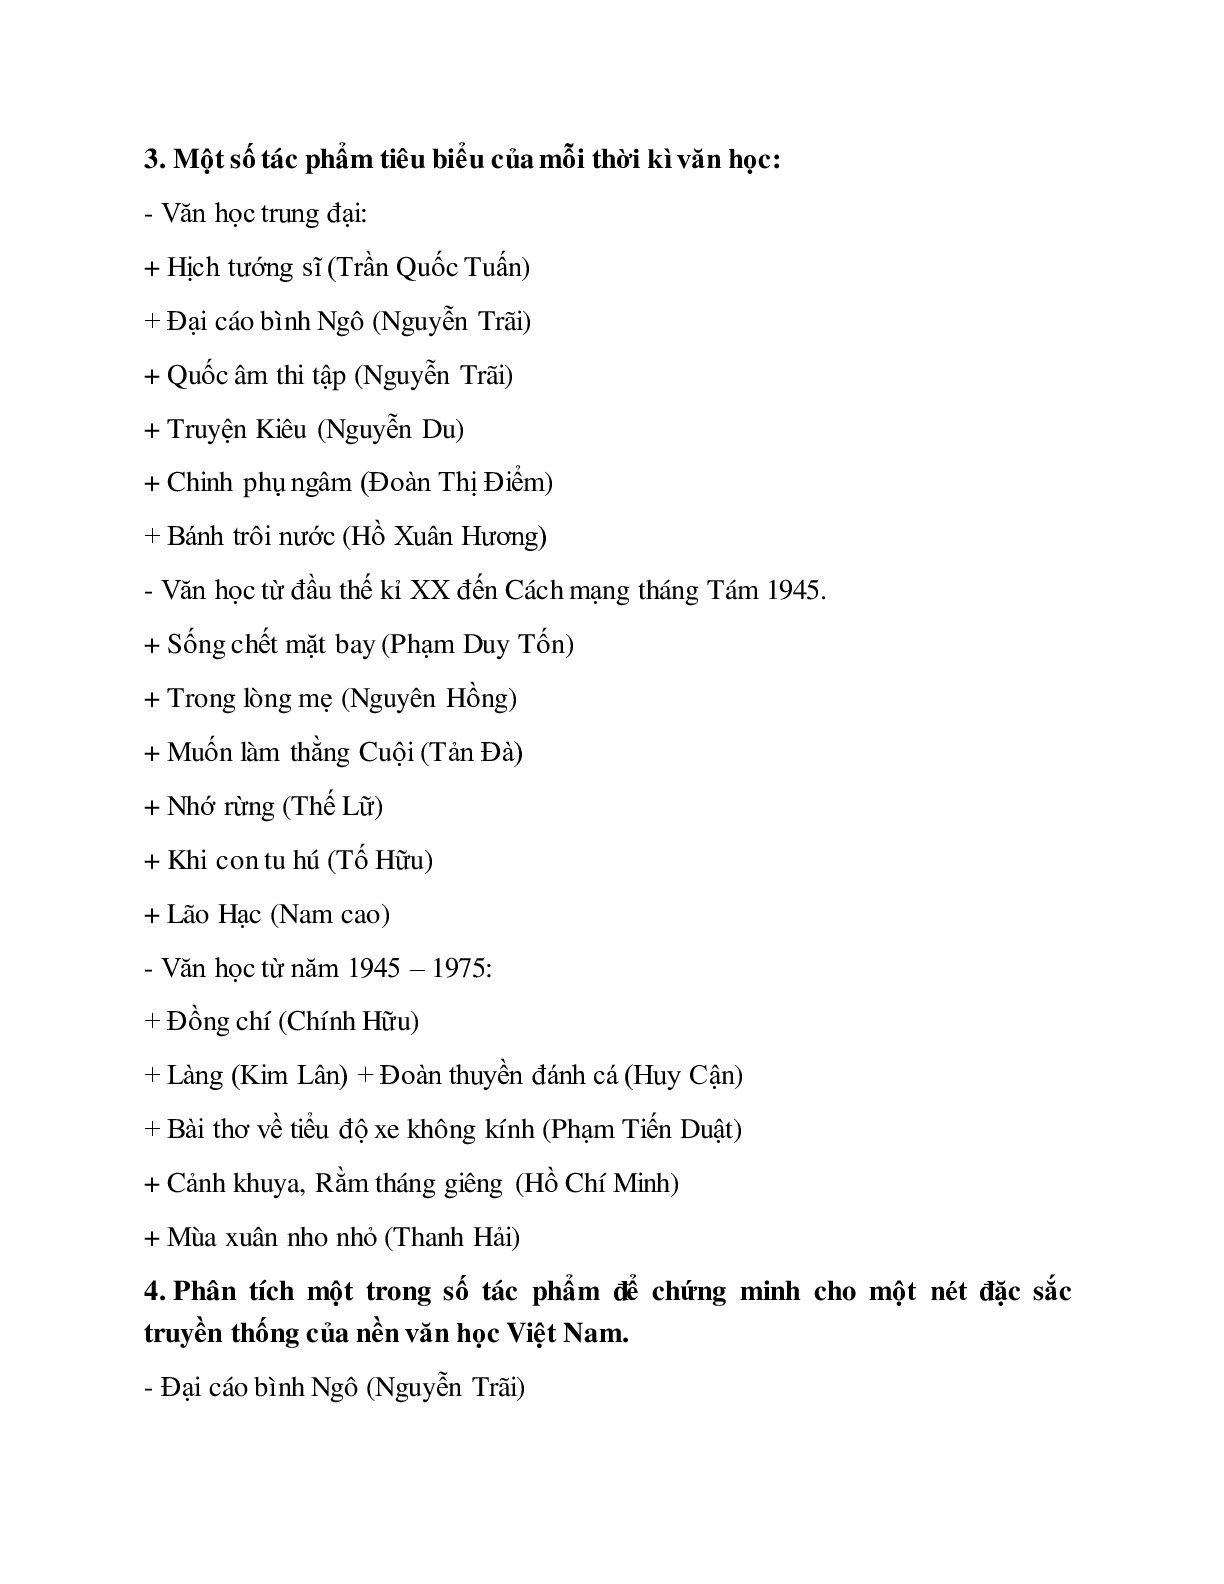 Soạn bài Tổng quan văn học Việt Nam - ngắn nhất Soạn văn 10 (trang 8)